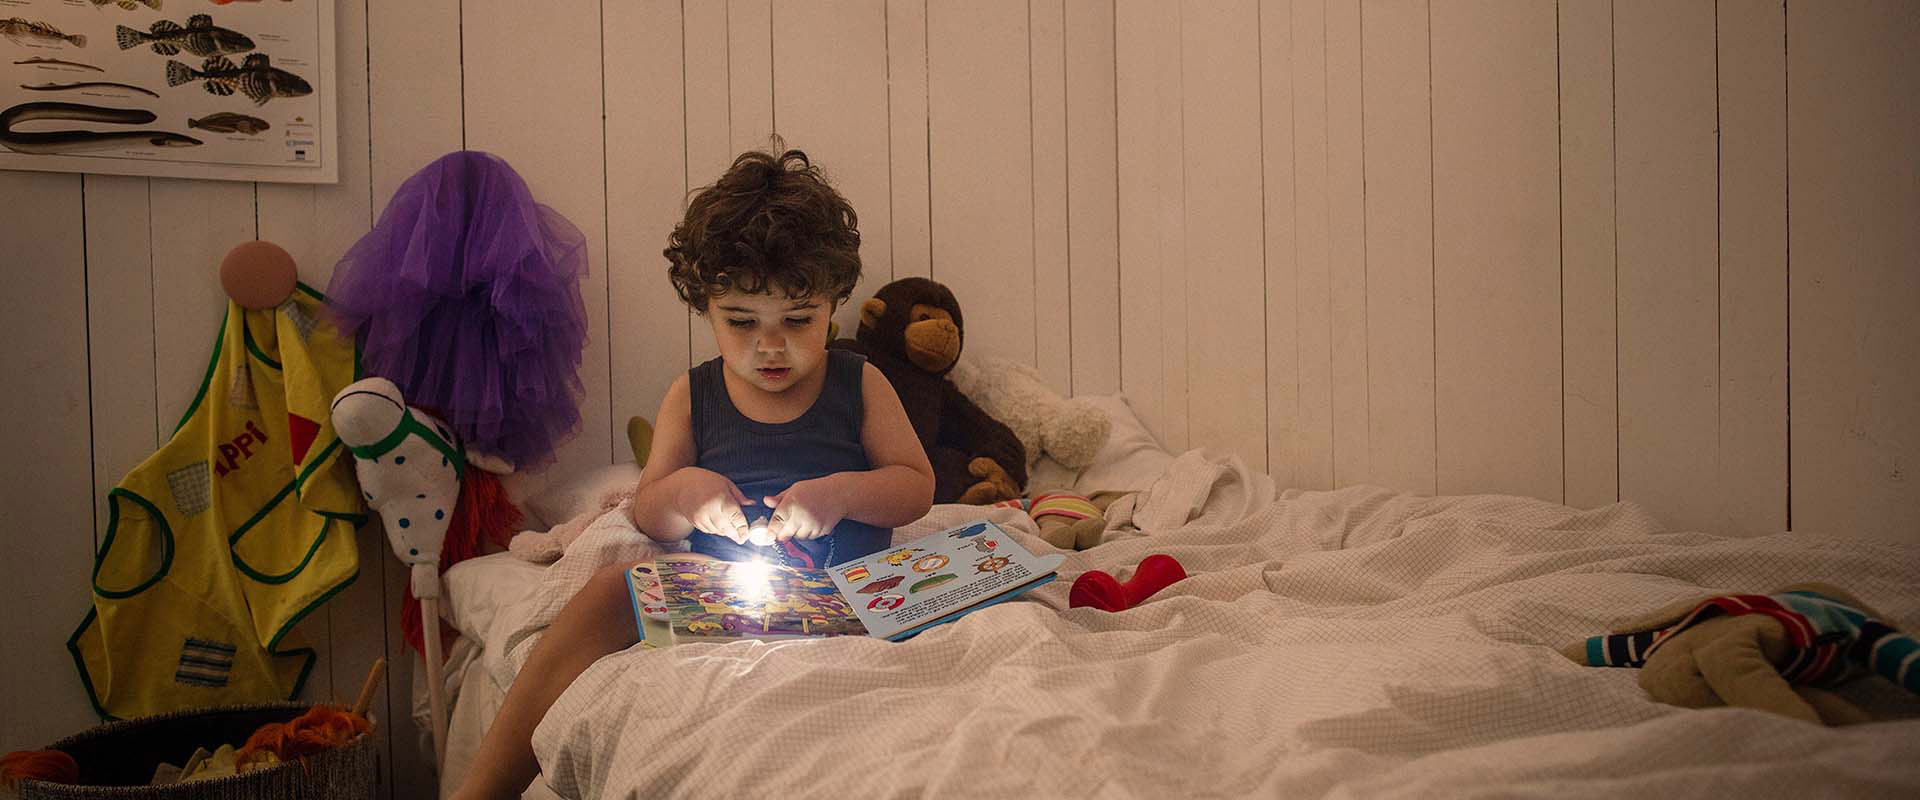 Junge mit Buch im Bett